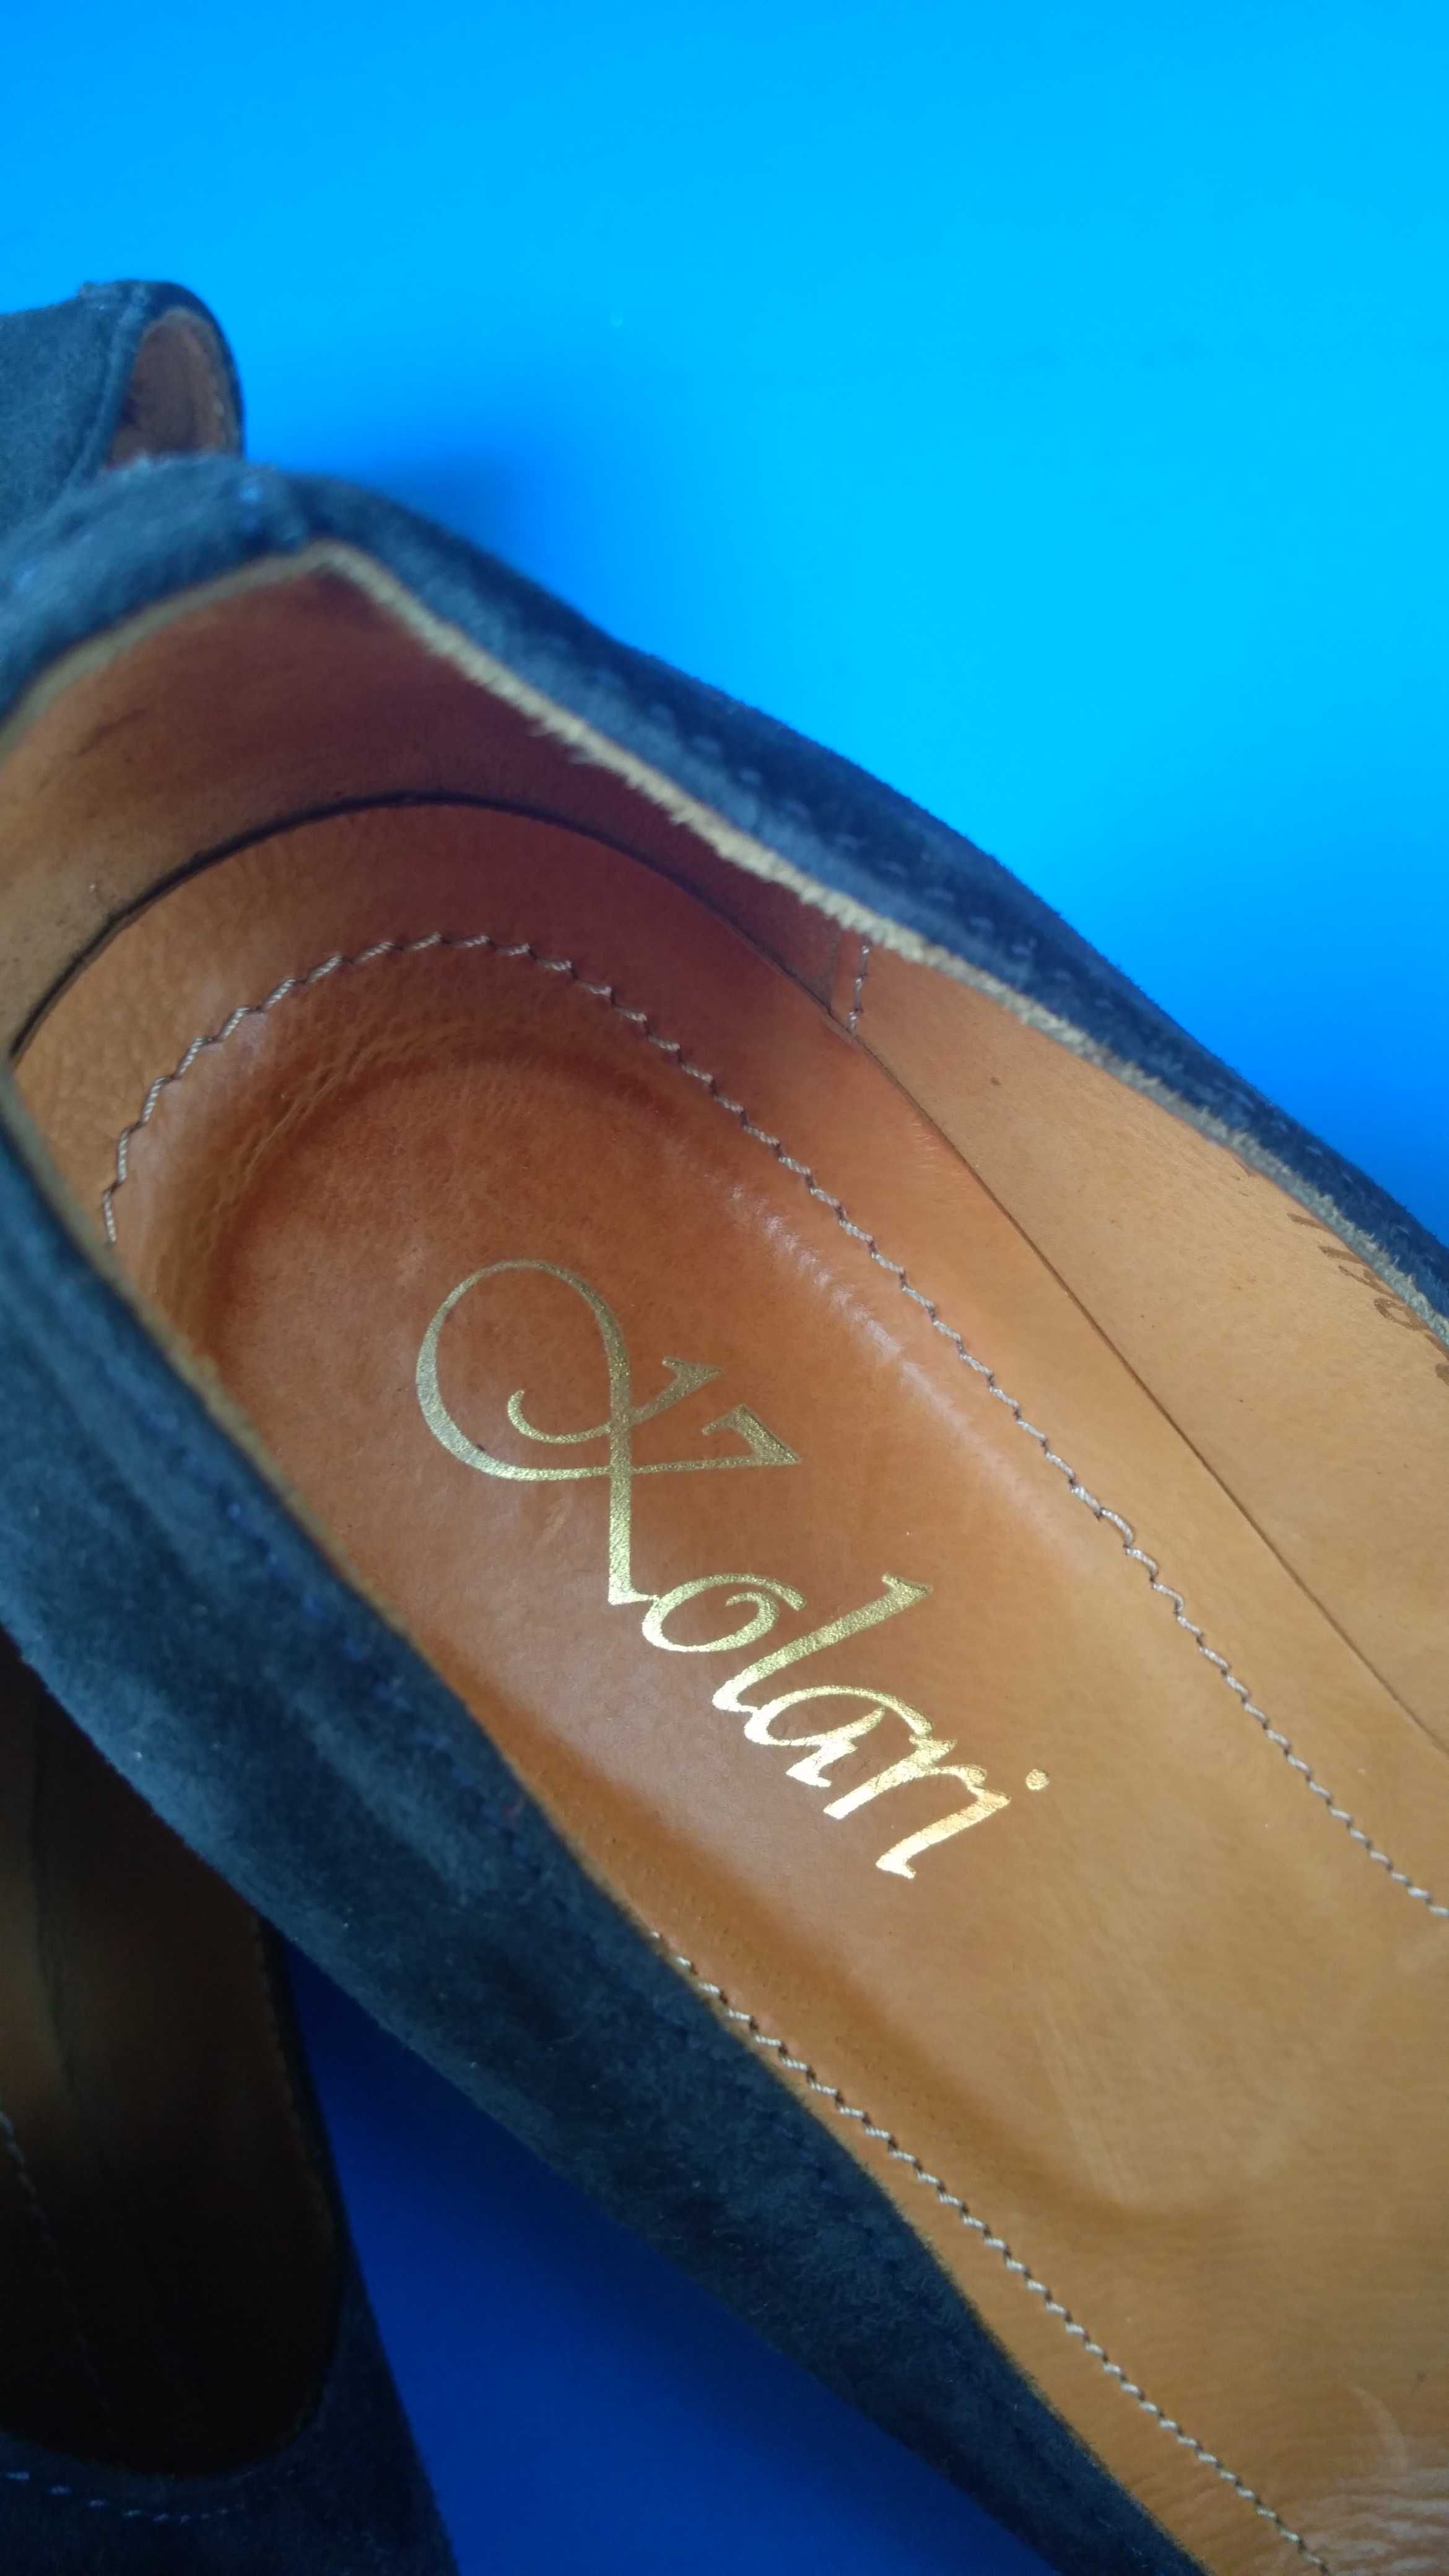 Замшевые женские кожаные туфли Kolari 36 размер